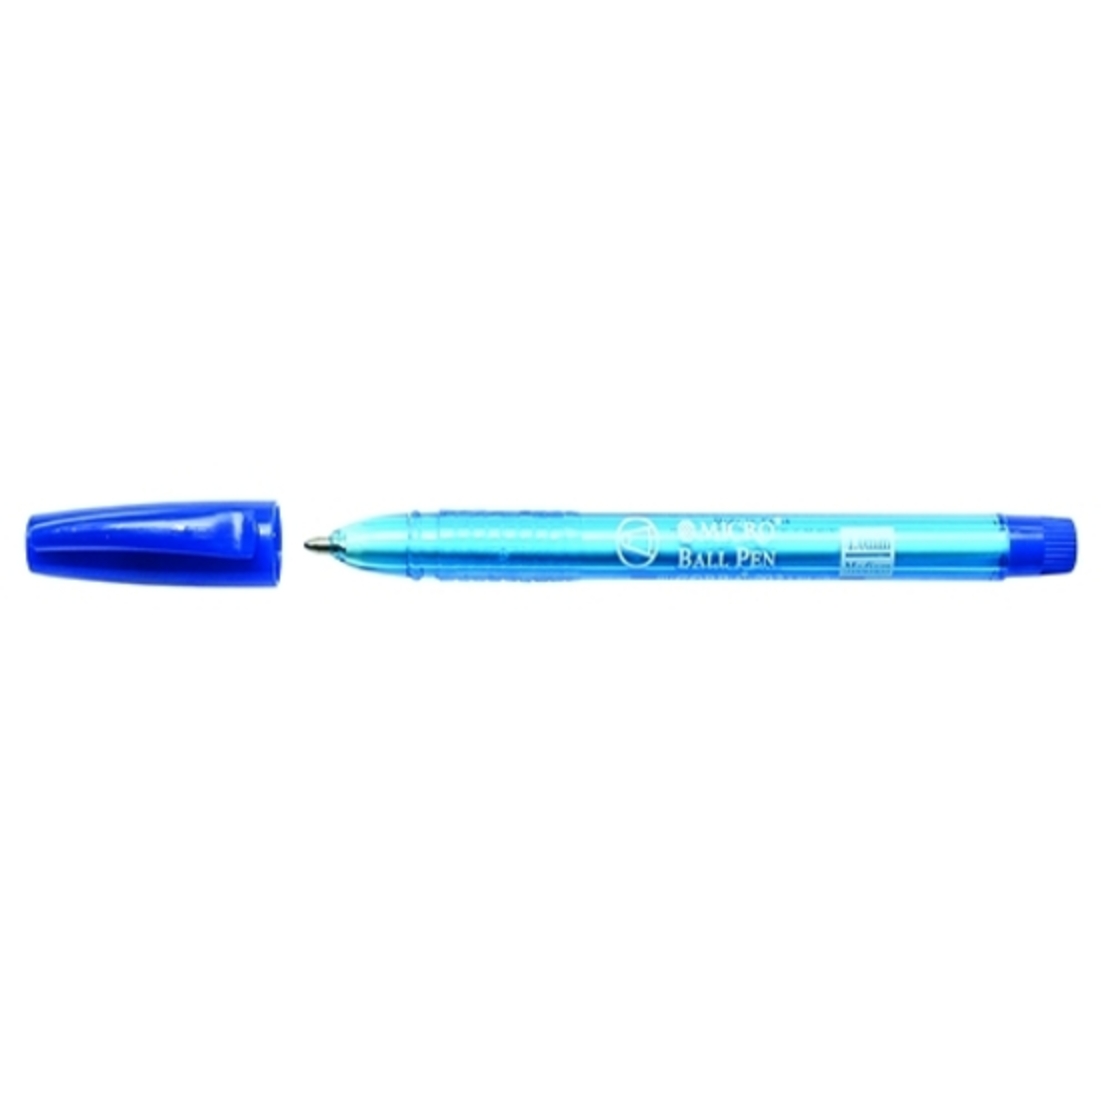 עט כדורי מיקרו קוברה 202 כחול 1/50 CHA